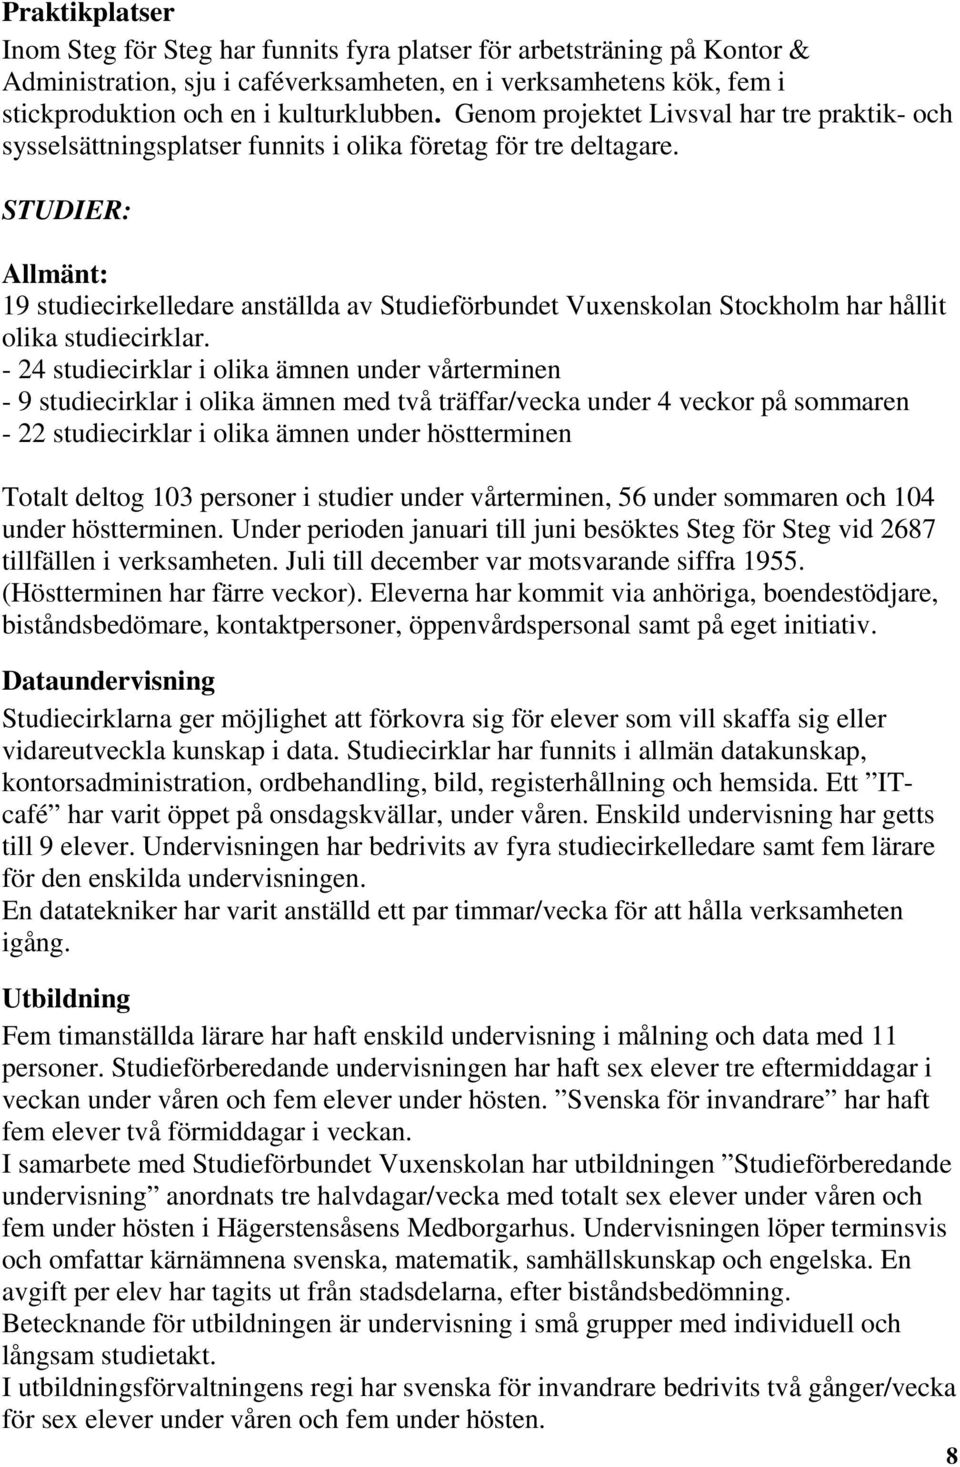 STUDIER: Allmänt: 19 studiecirkelledare anställda av Studieförbundet Vuxenskolan Stockholm har hållit olika studiecirklar.